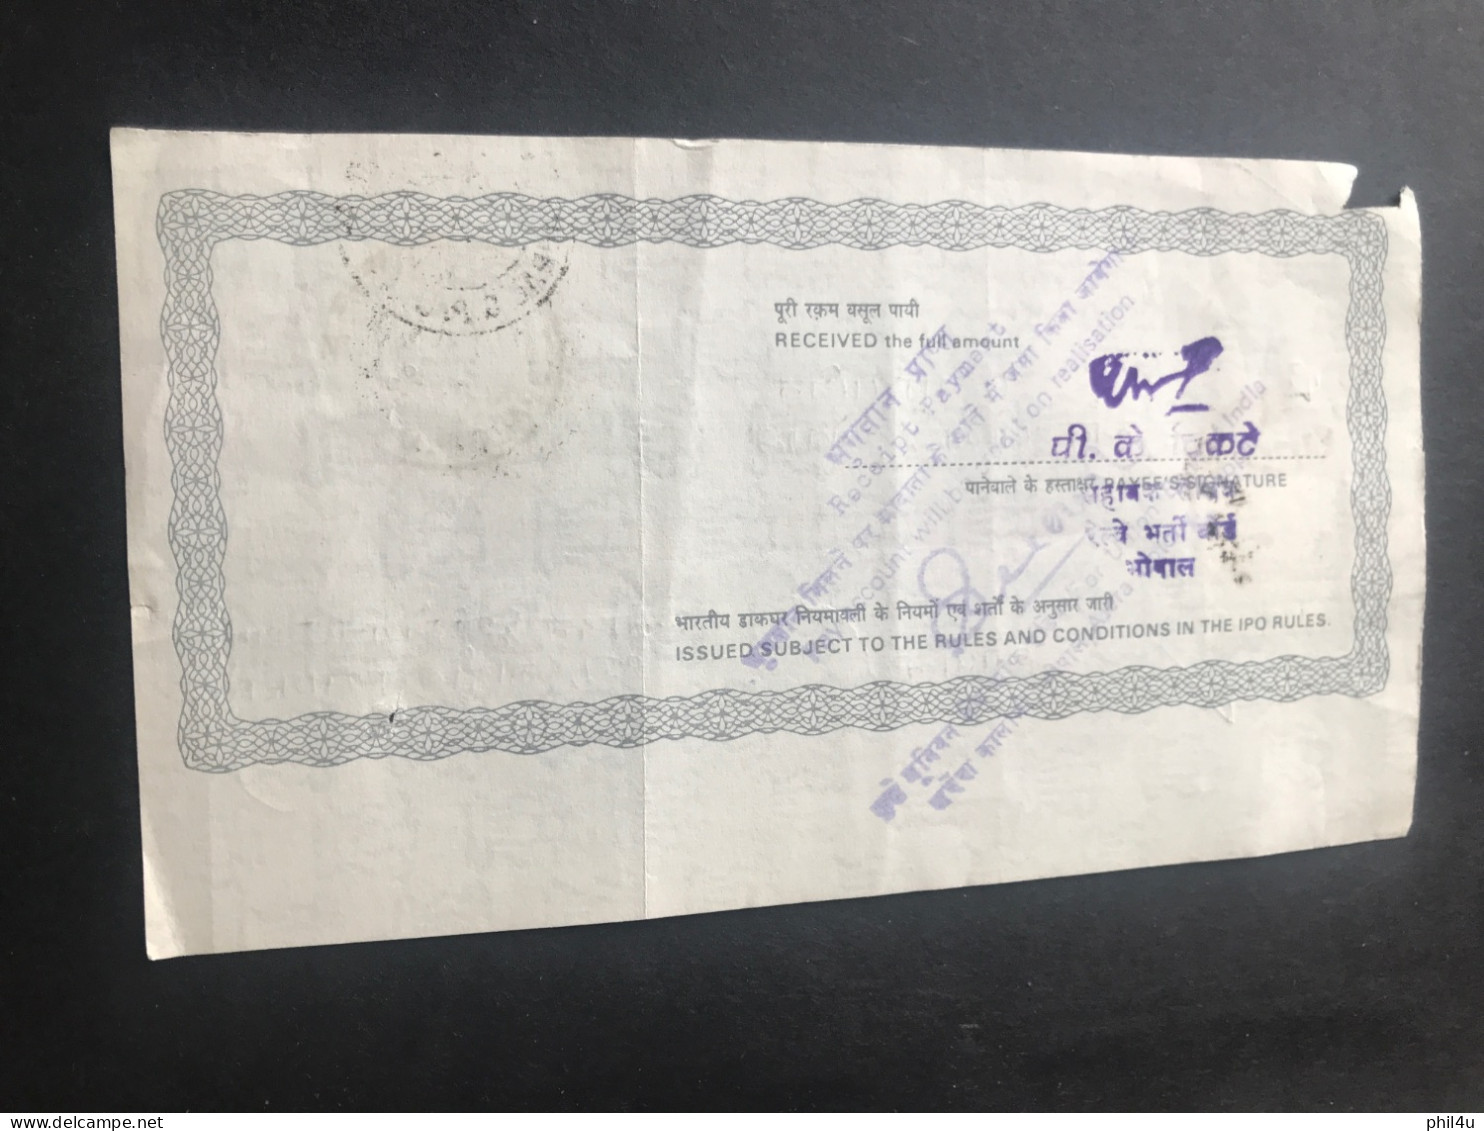 Mahatma Gandhi 1969 FDCANCEL cover 1 postal order-child smile nations pride 2 stamps regd cover Ganesh Ganj 3 items